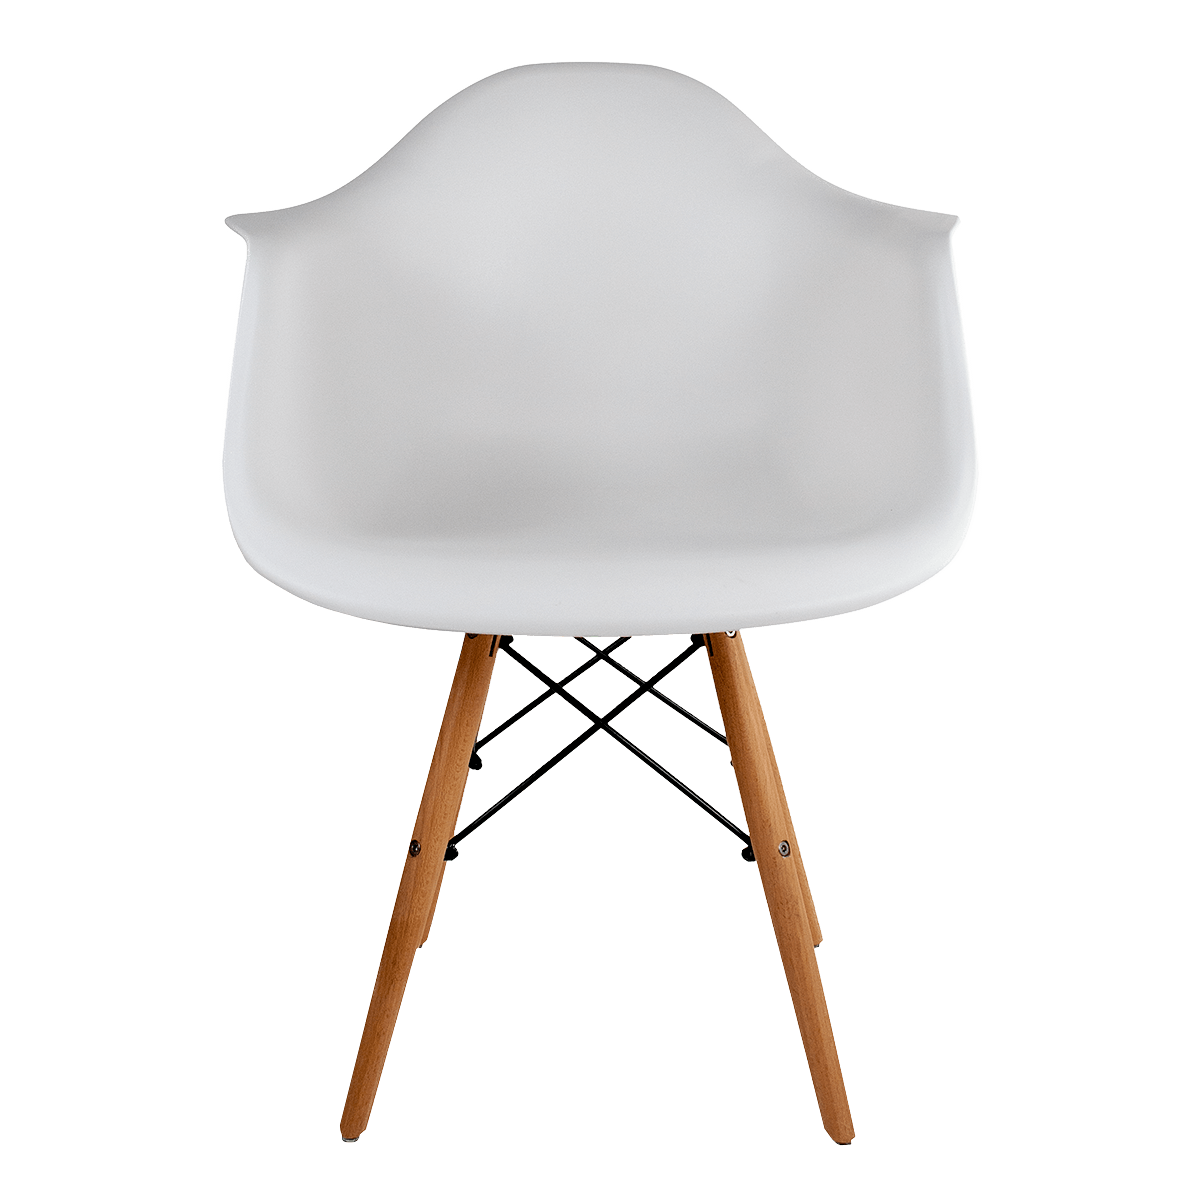 Cadeira Eames DAW Plastic Chair - Branca